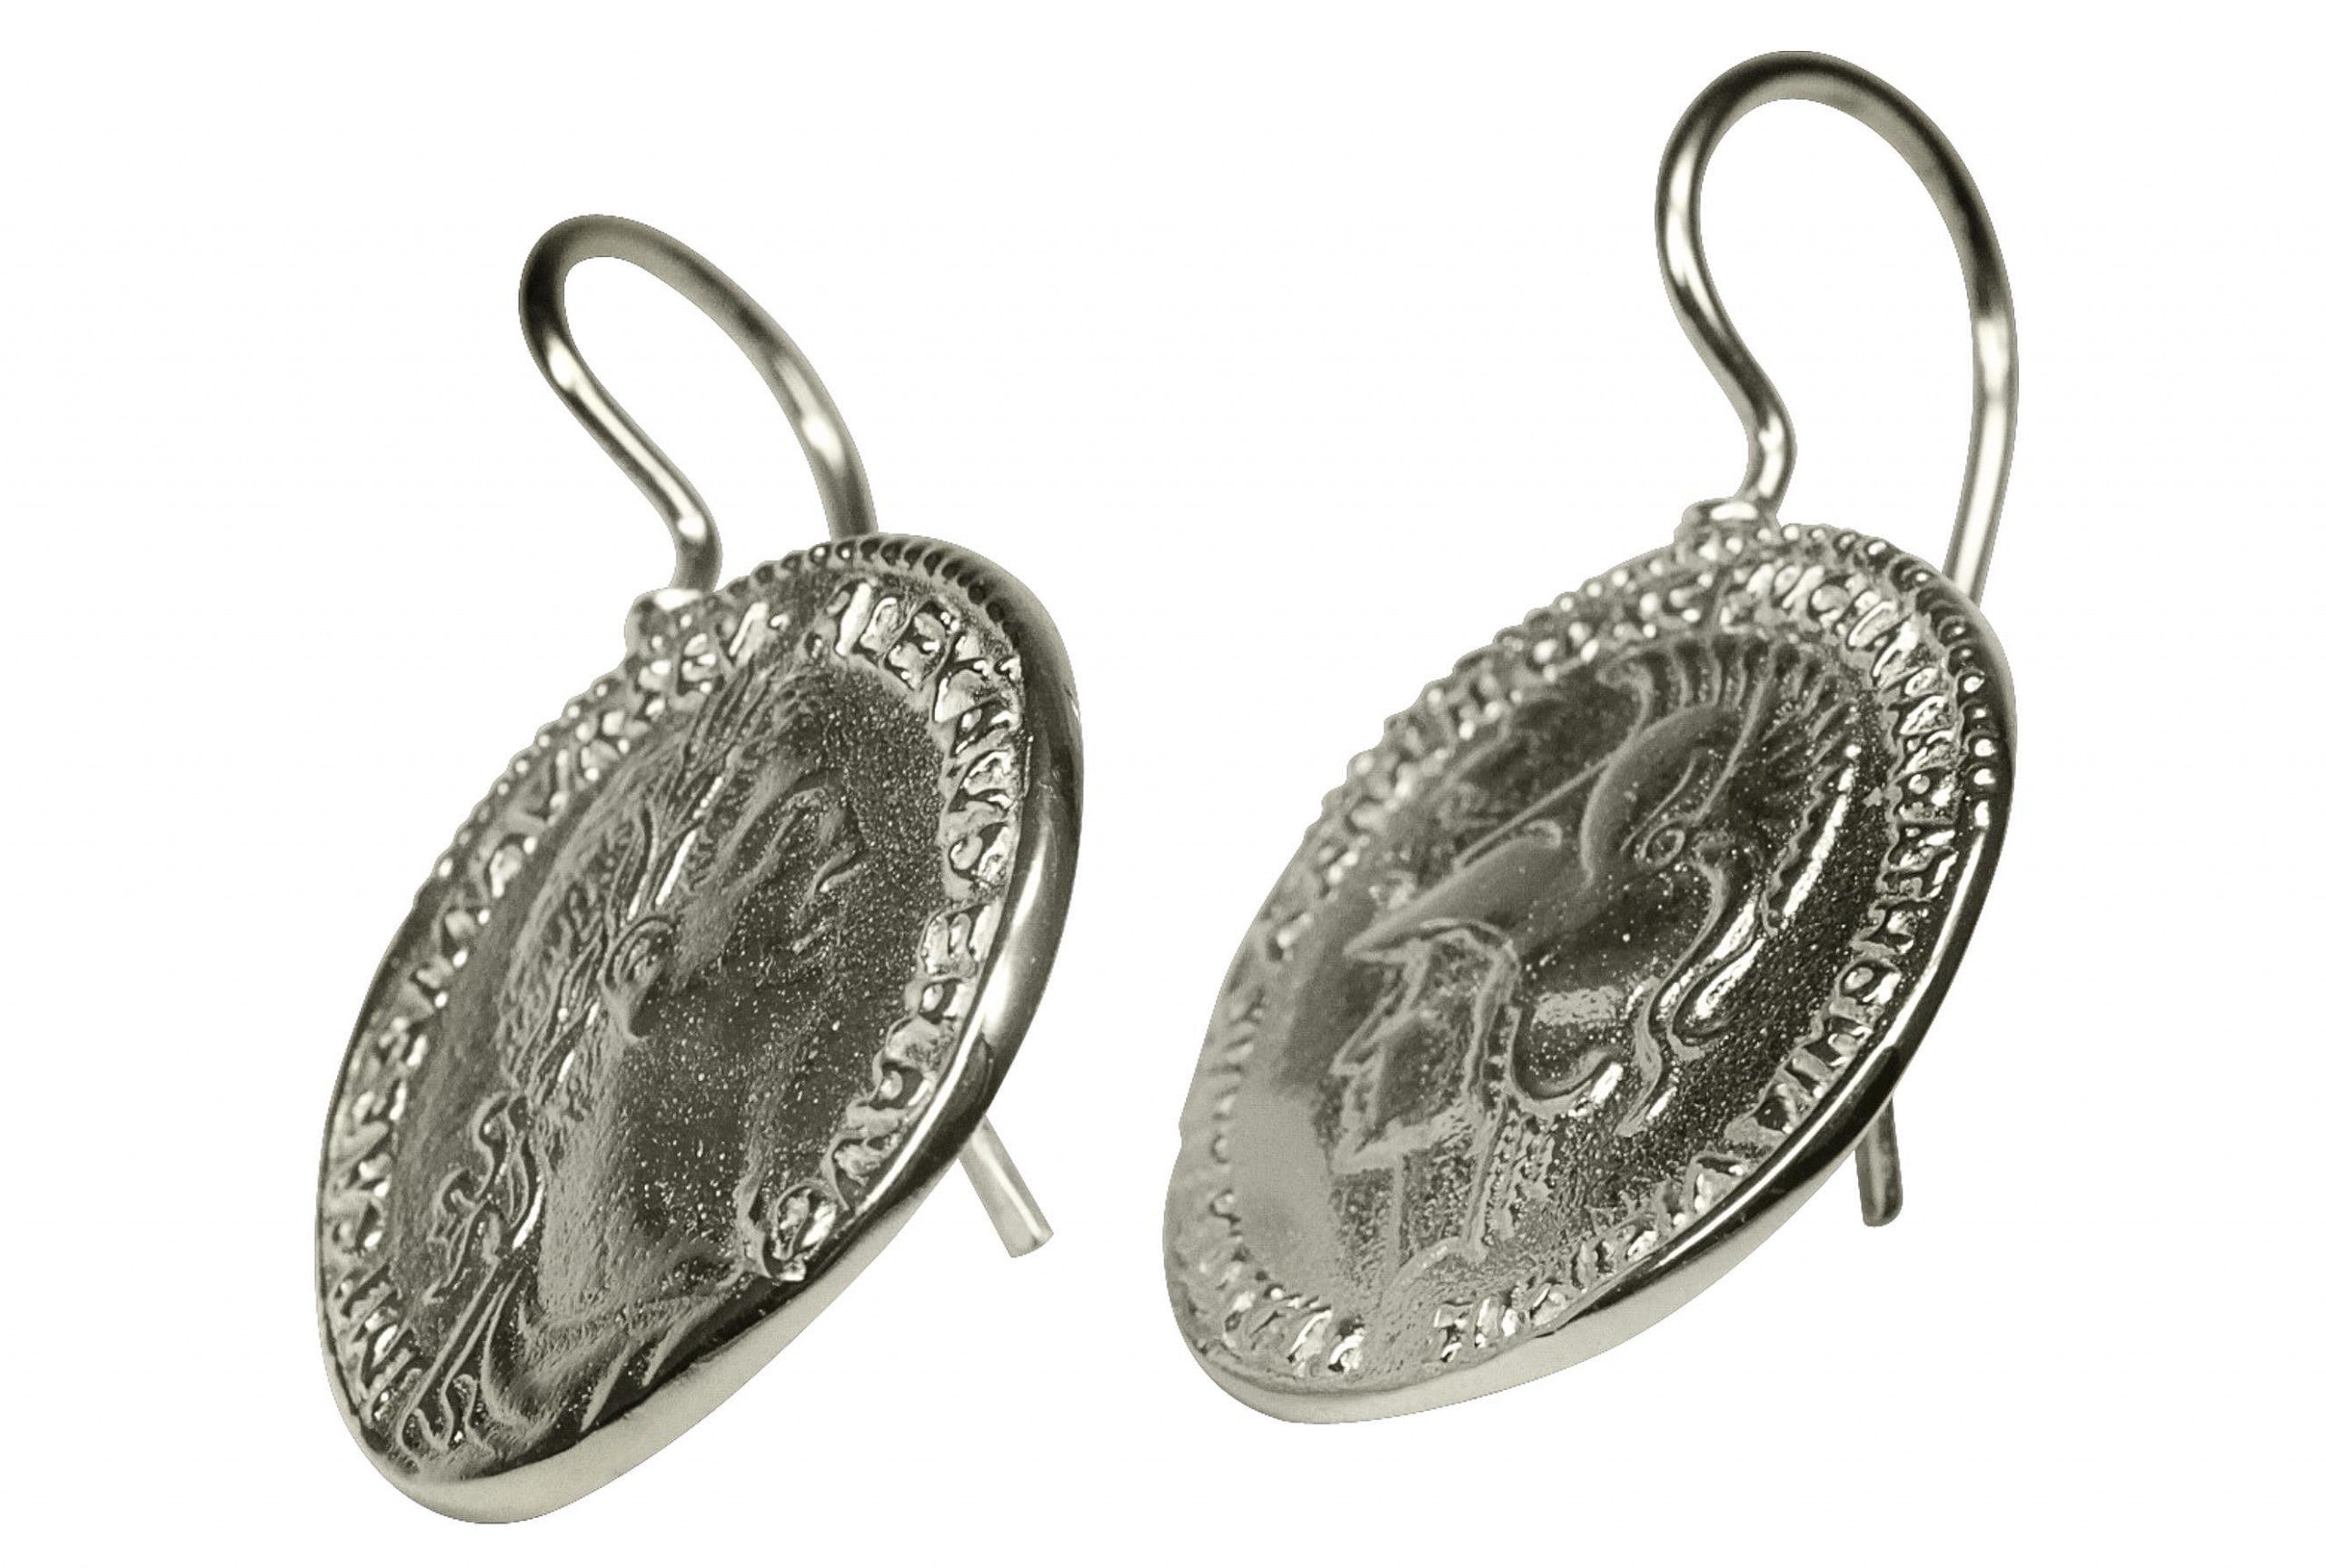 Ohrhänger in Silber mit römischer Prägung und römischem Münzendesign.